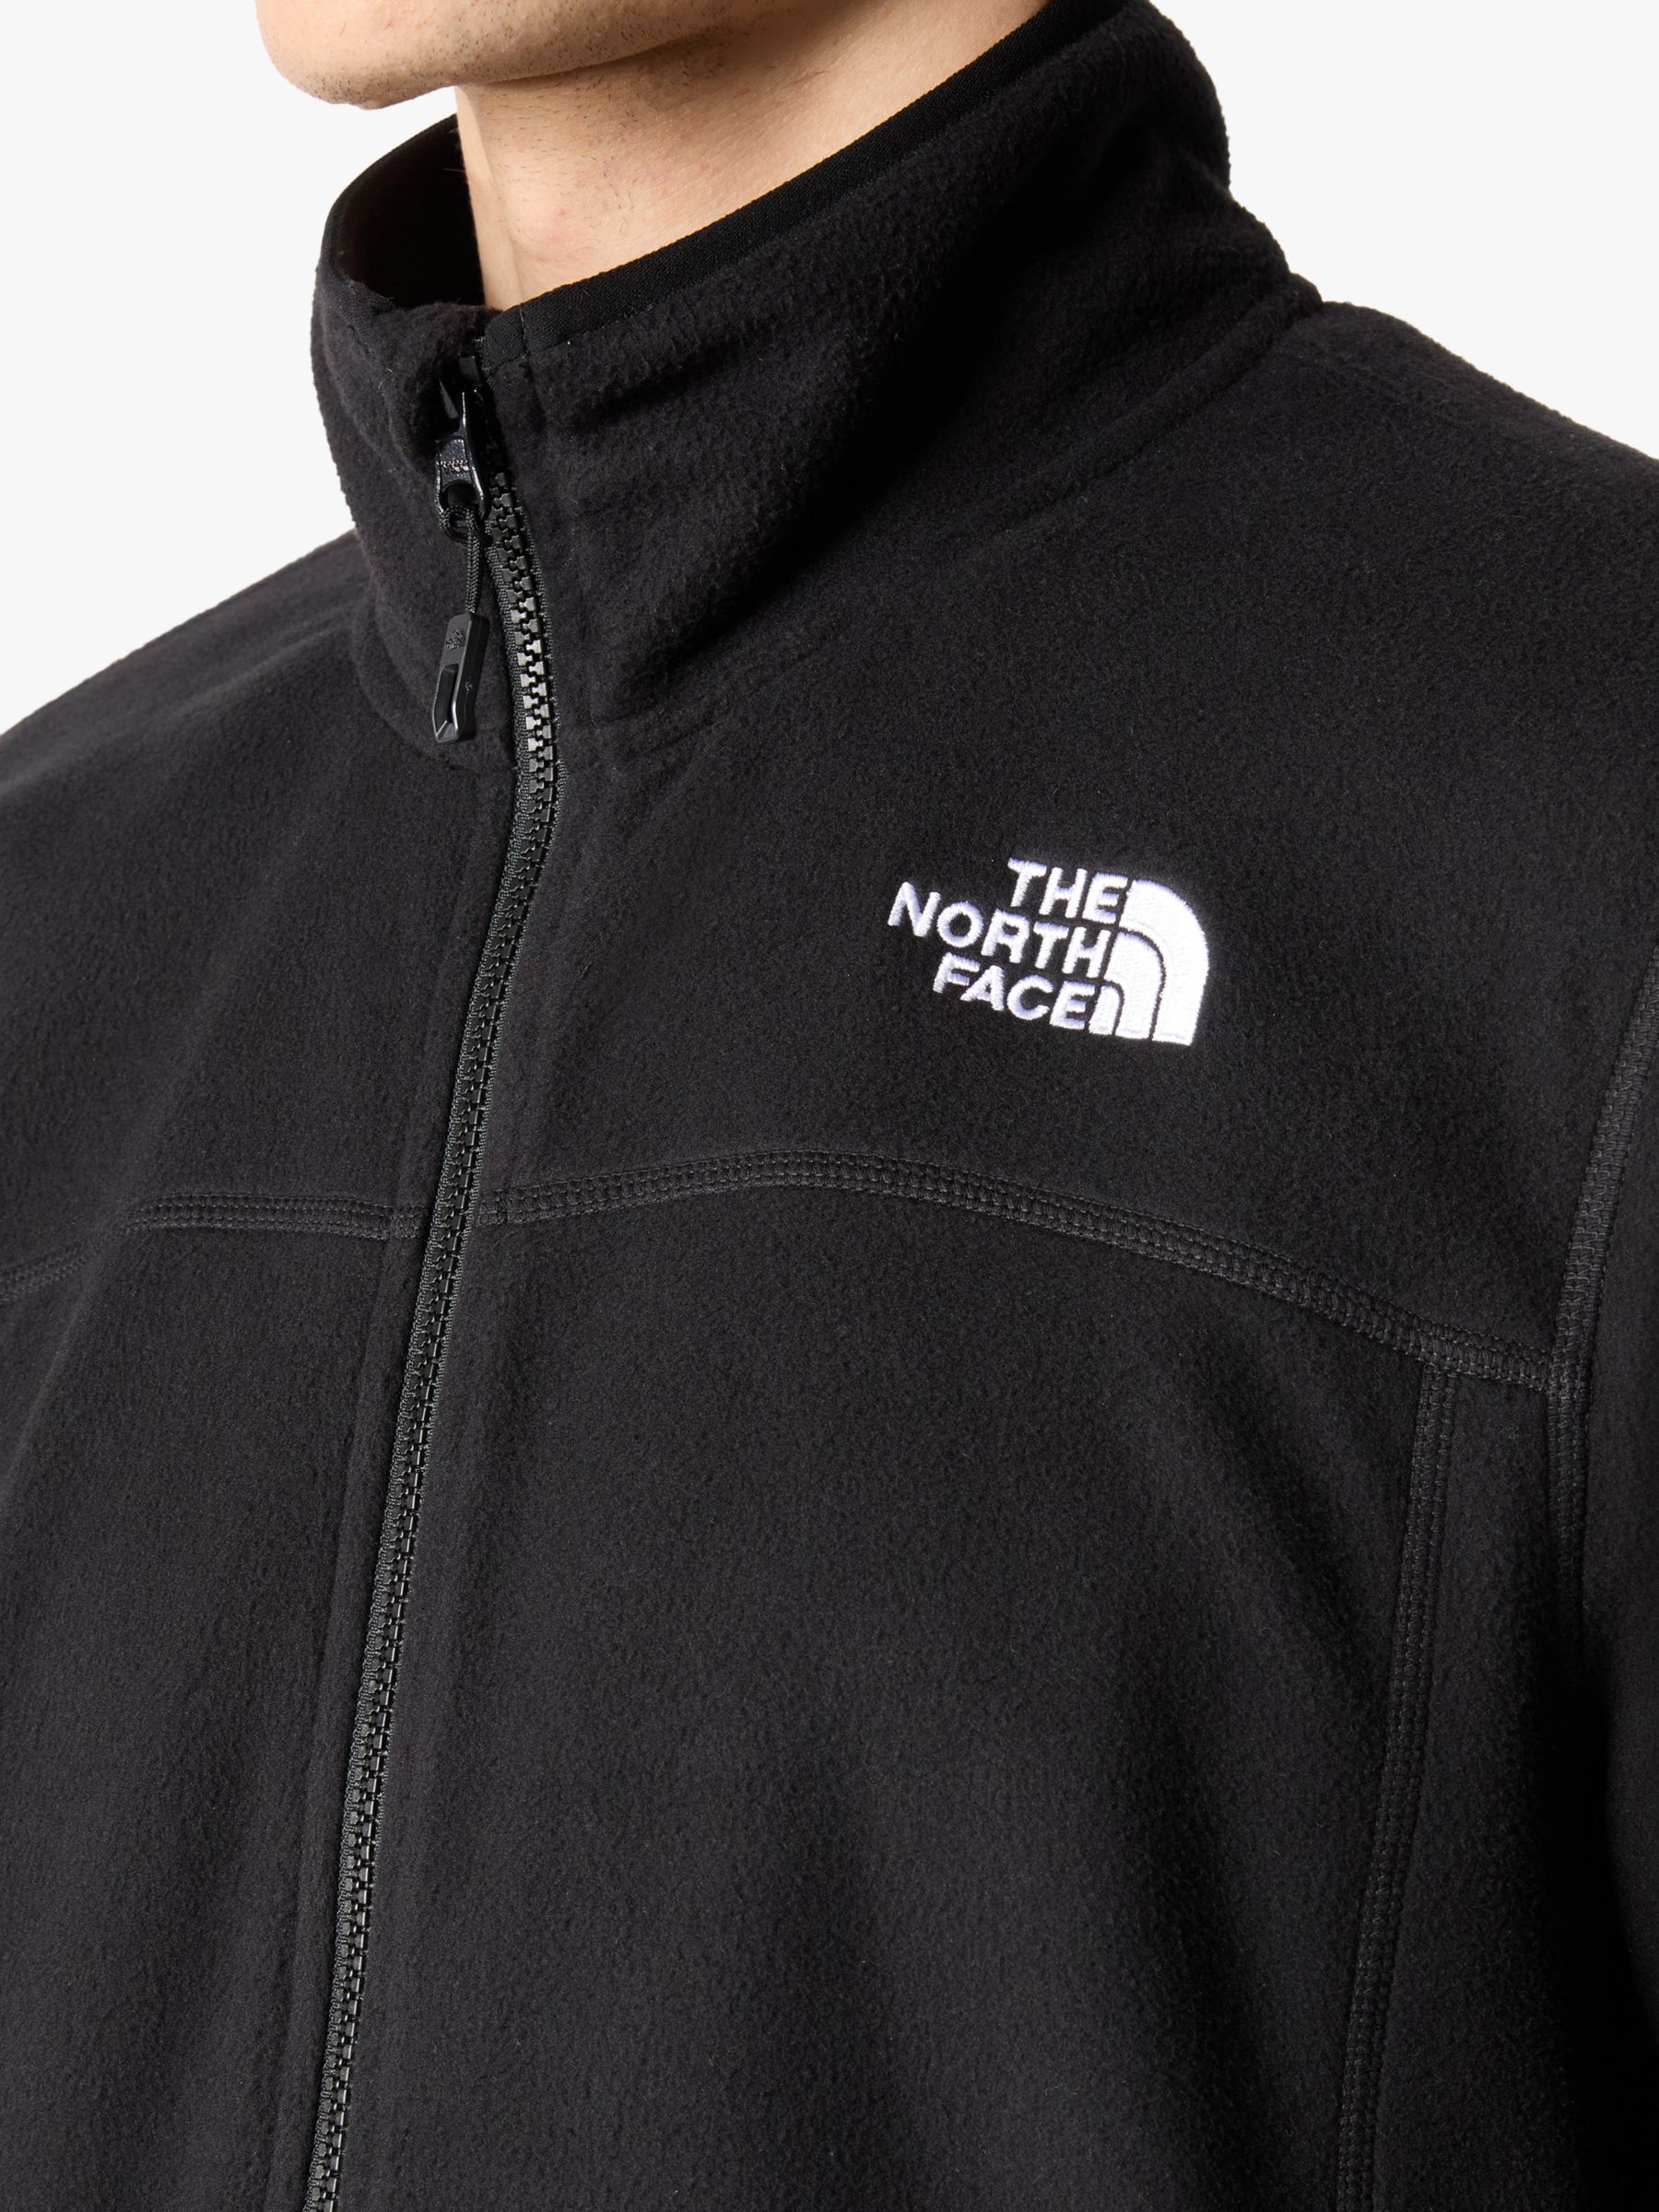 Buy The North Face 100 Glacier Full Zip Men's Fleece Online at johnlewis.com